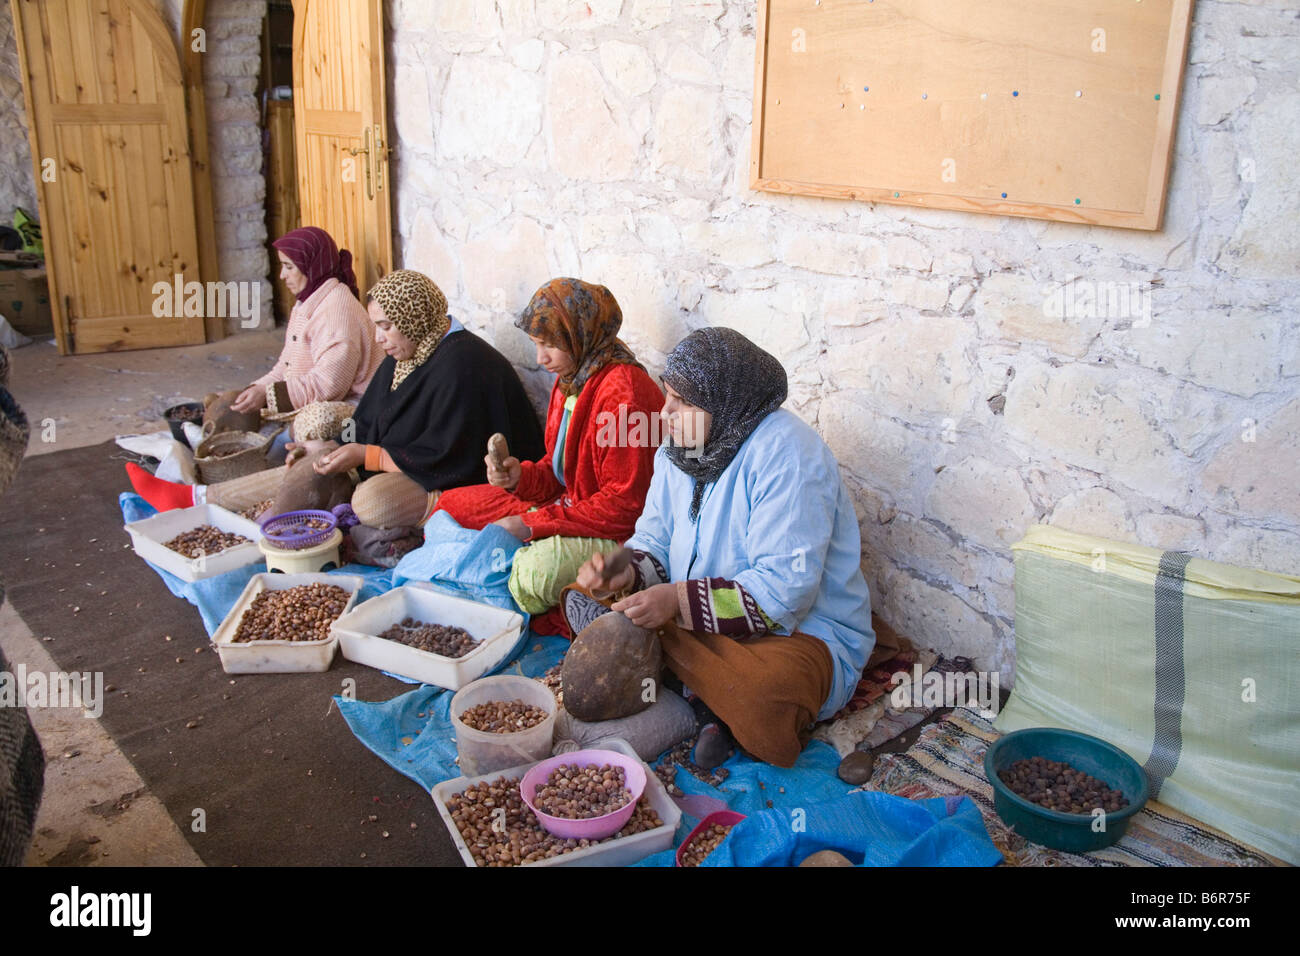 Marokko in Nordafrika Dezember vier marokkanischen Frauen mit Steinen, offene Obst Schalen der Arganbaum, die Kerne zu extrahieren zu brechen Stockfoto